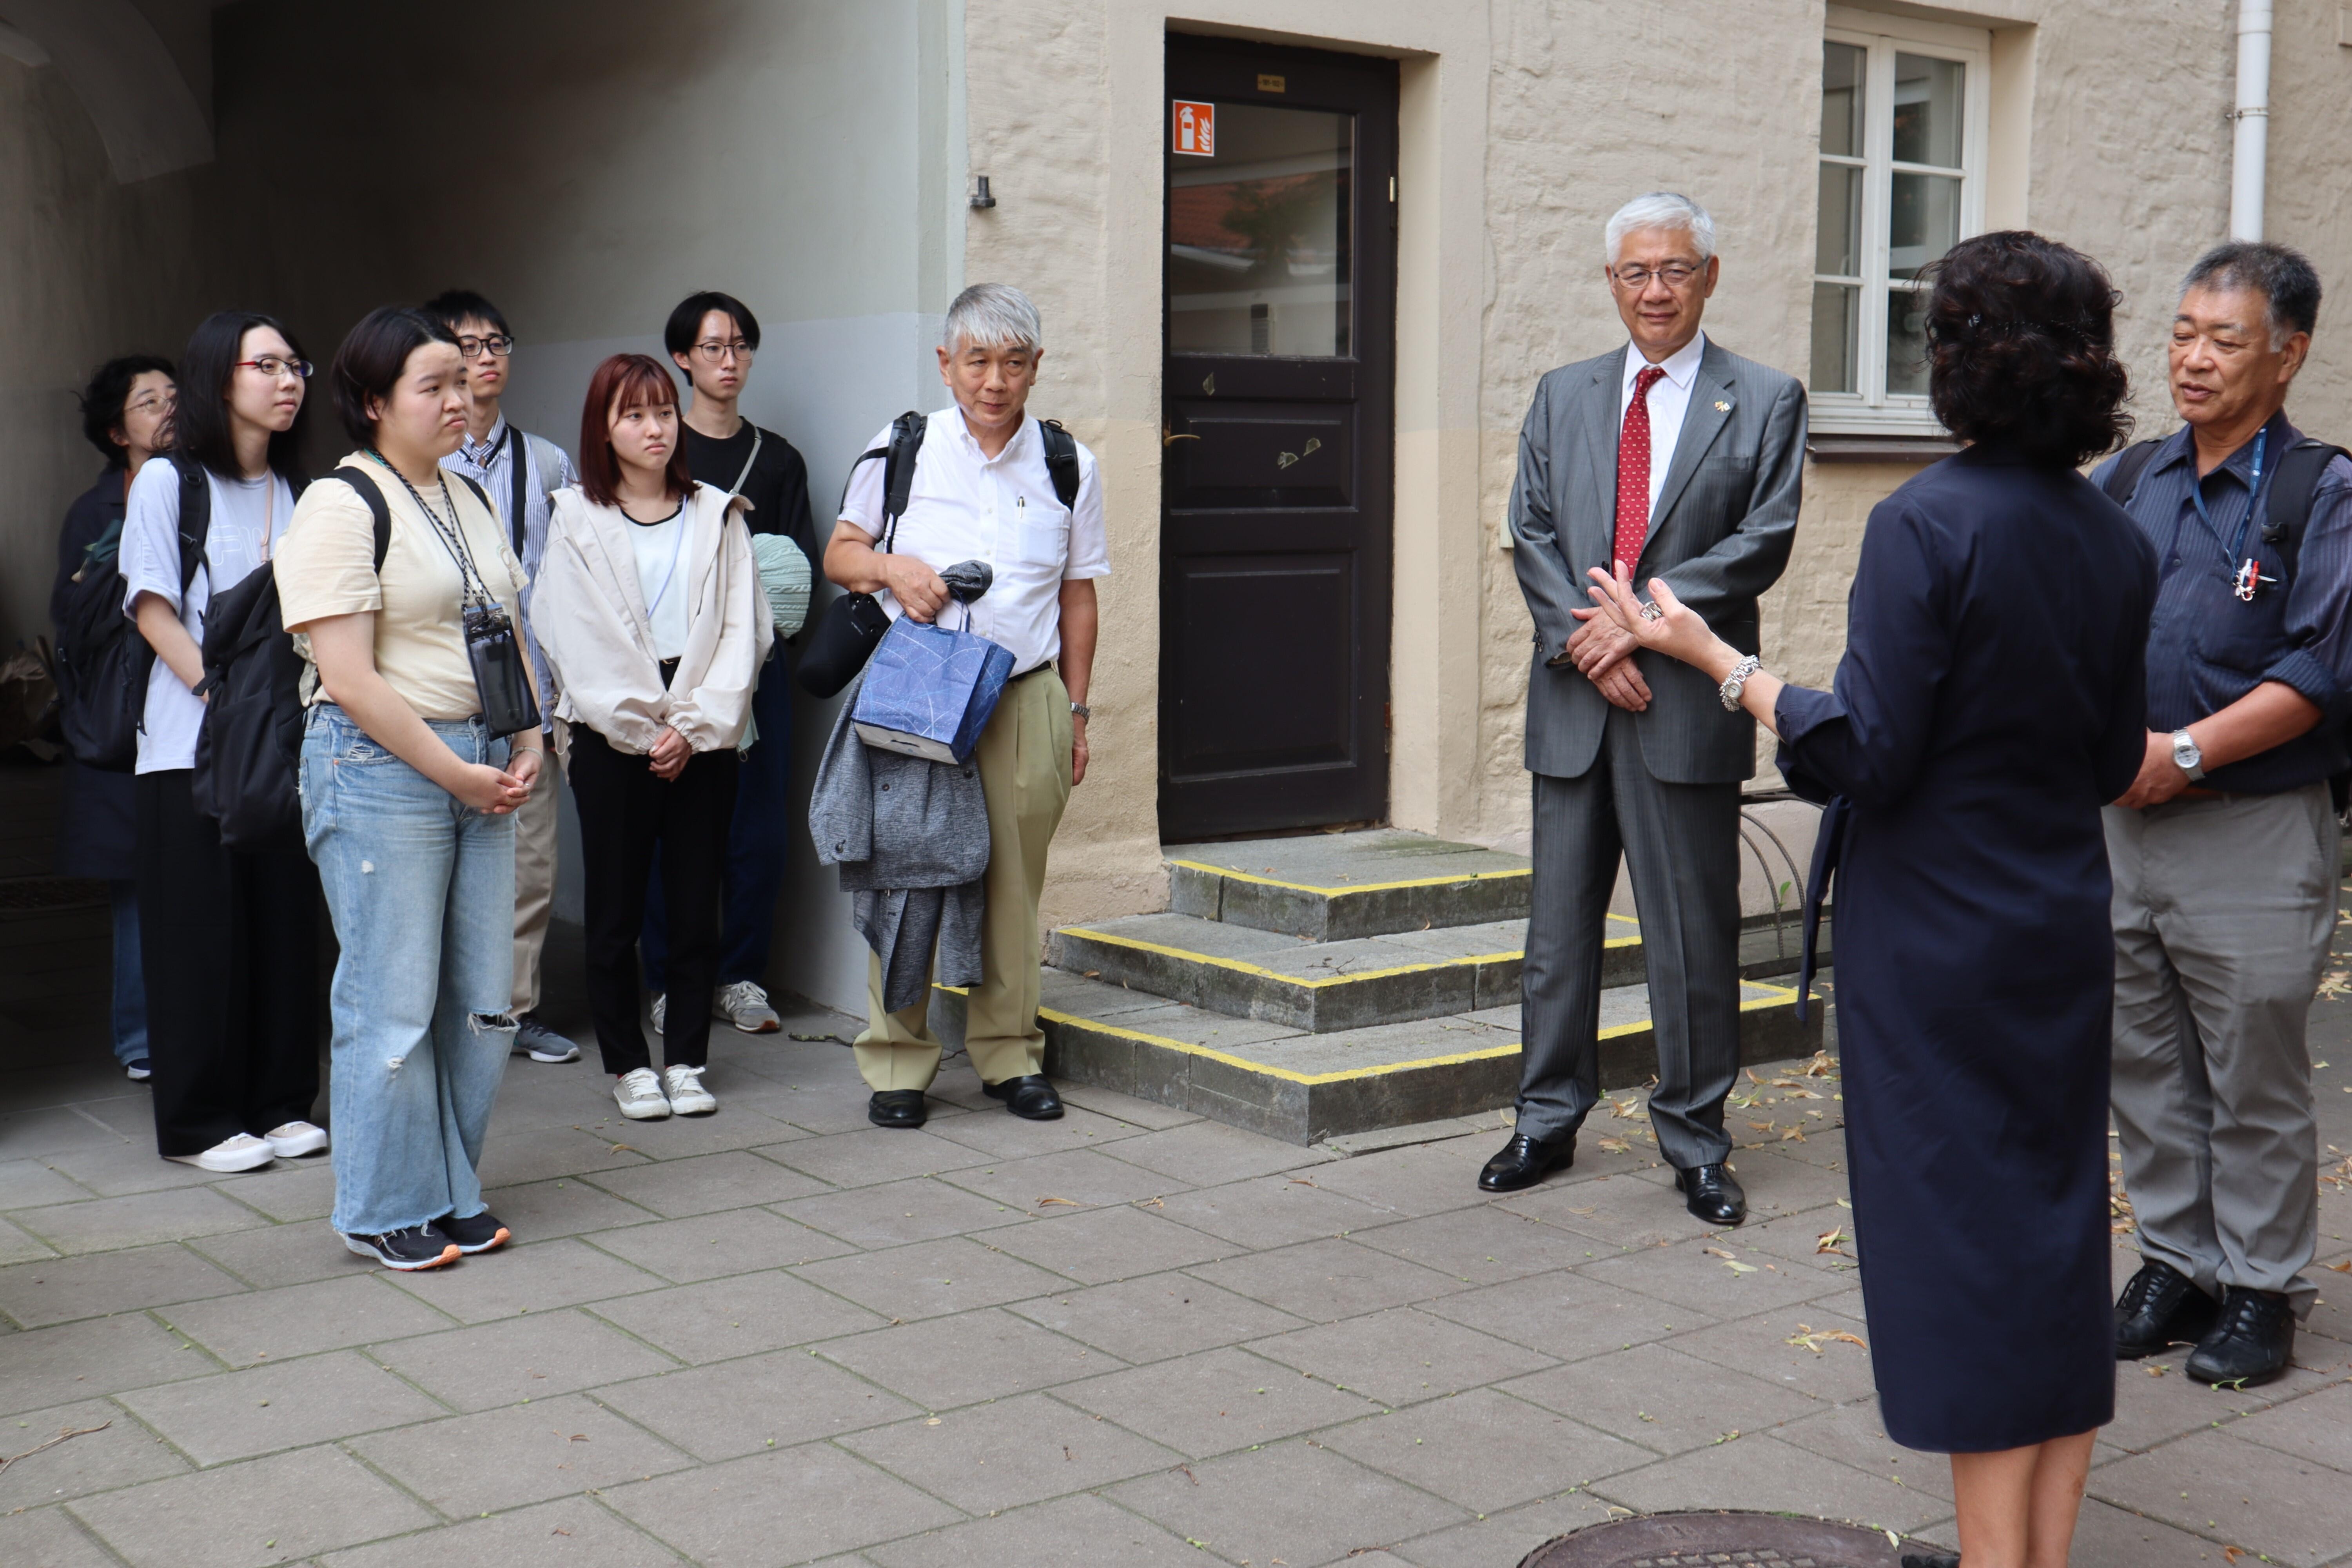 ヴィリニュス大学の見学には尾崎哲・駐リトアニア大使（右から3人目）も同行